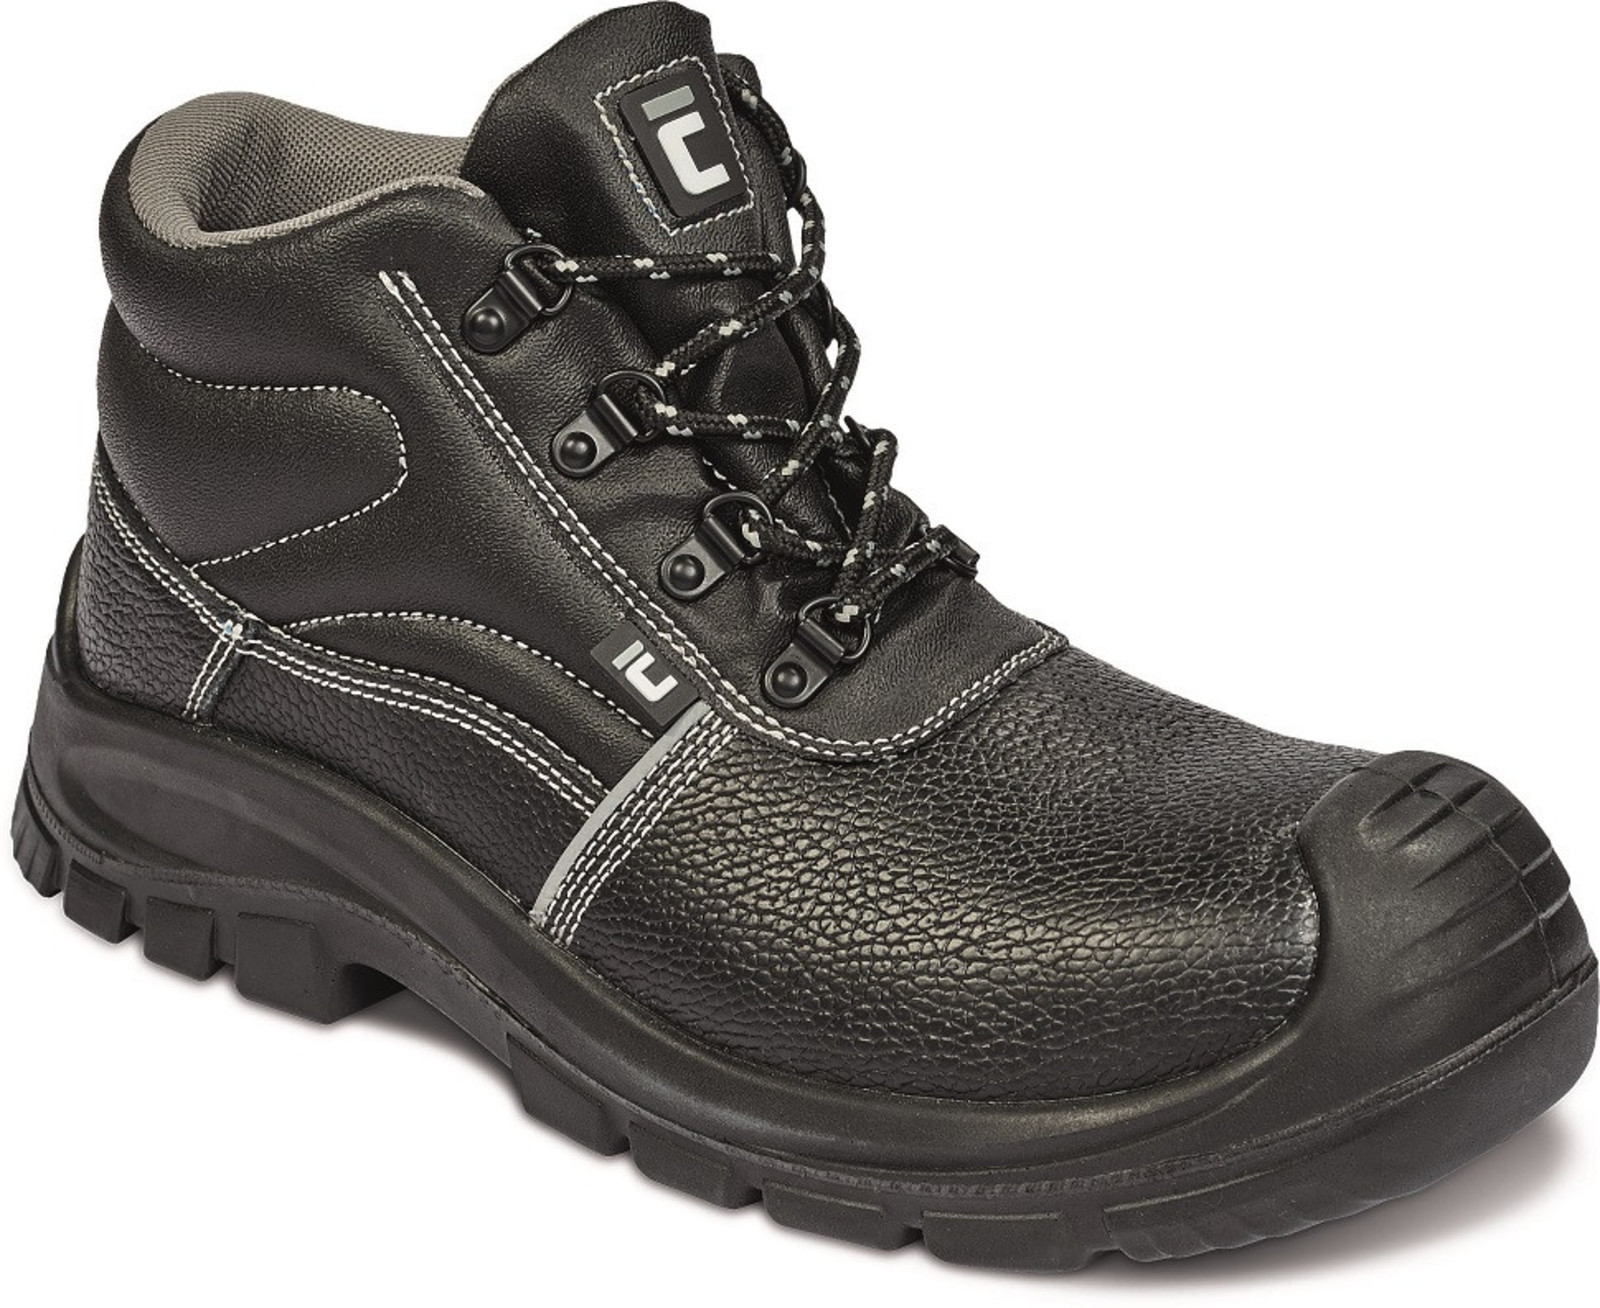 Bezpečnostná obuv Raven XT S3 Metal Free - veľkosť: 37, farba: čierna